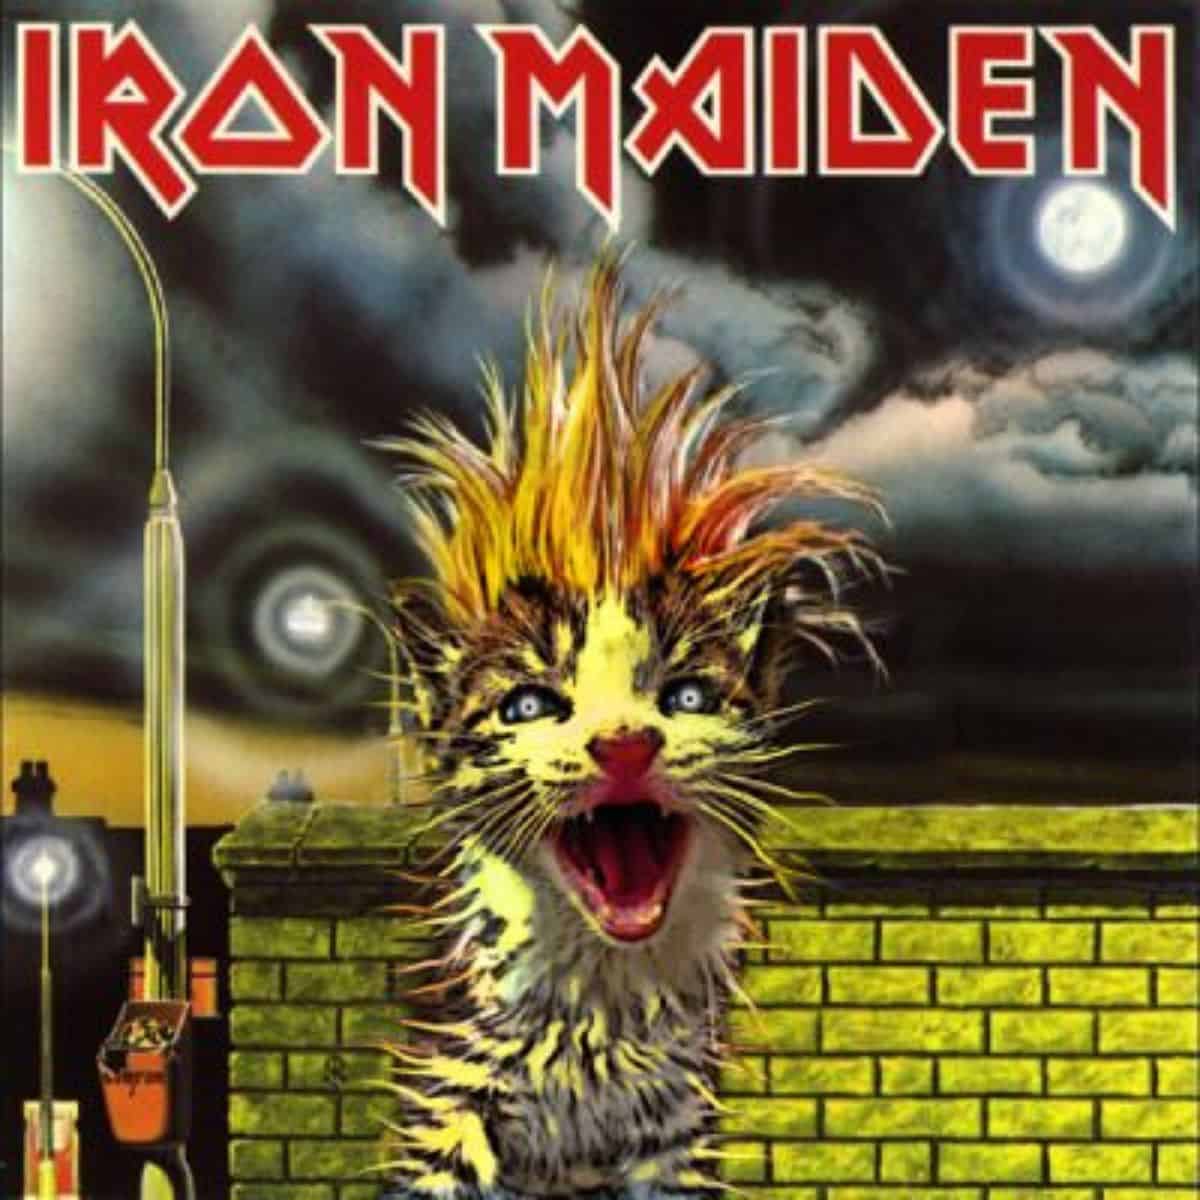 cat version of iron maiden's album cover